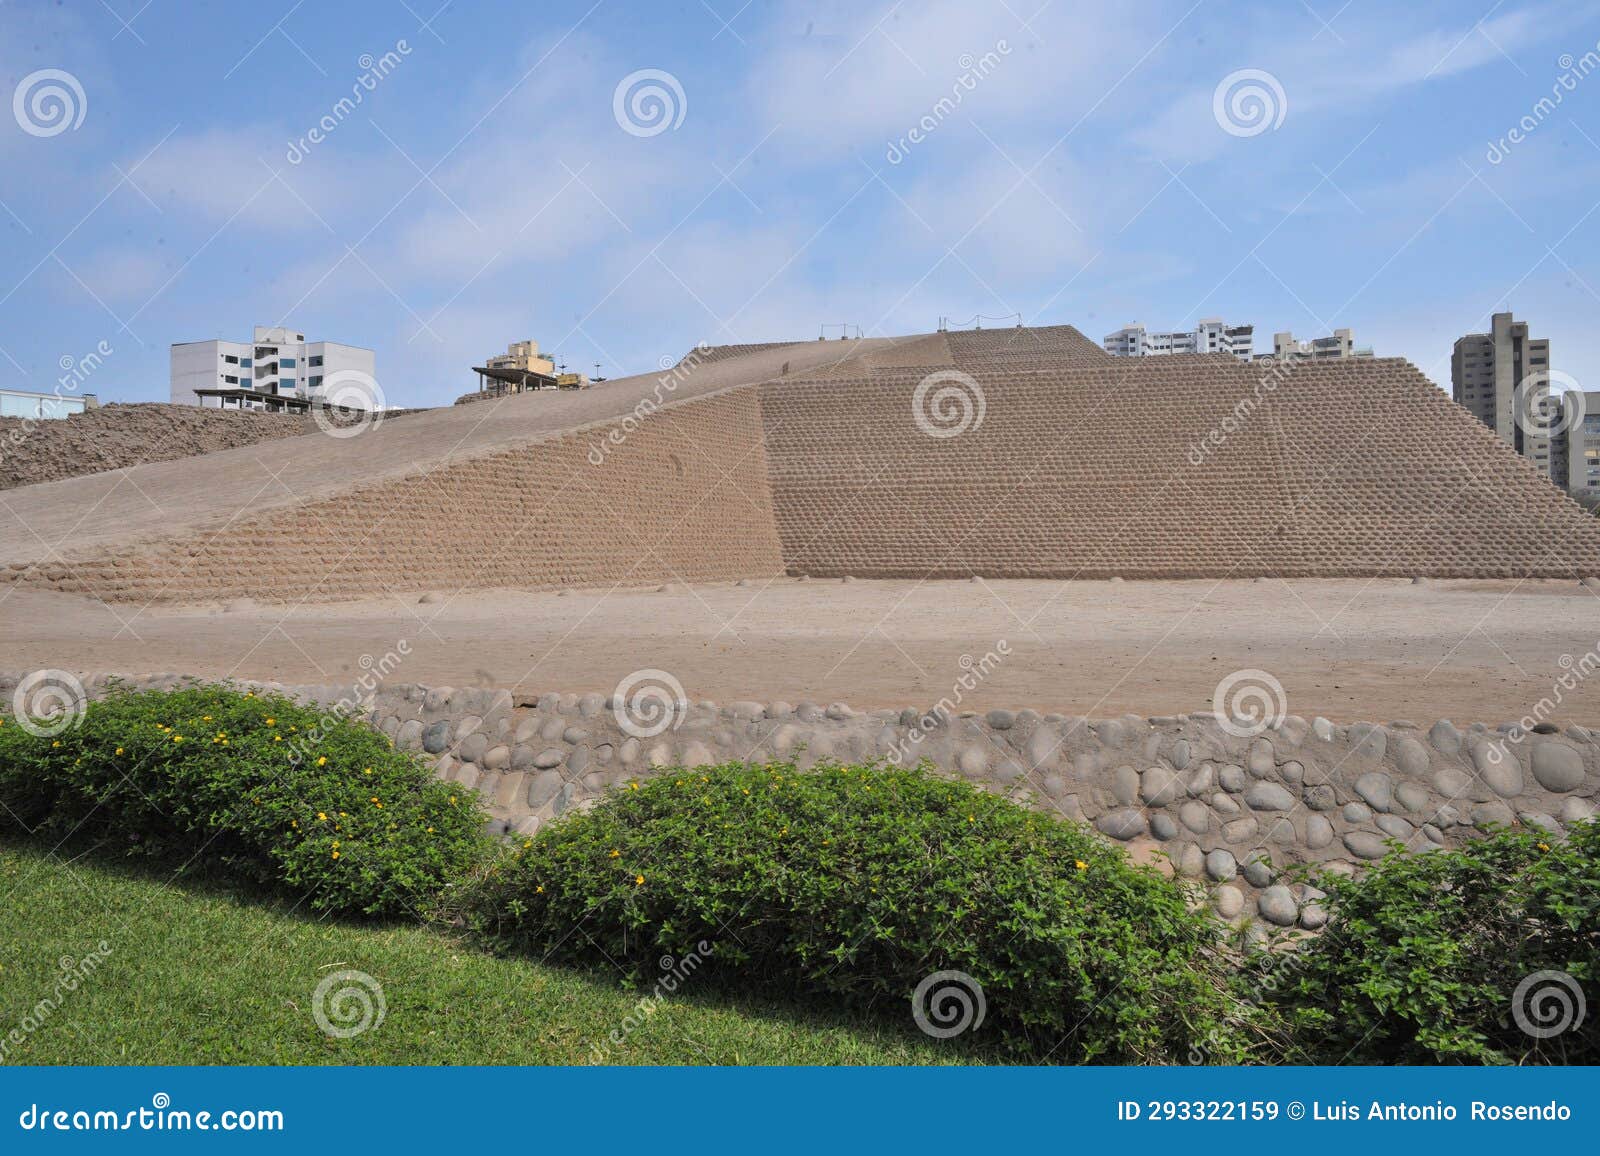 lima, peru - huallamarca, the inca pyramid in lima's huaca, peru